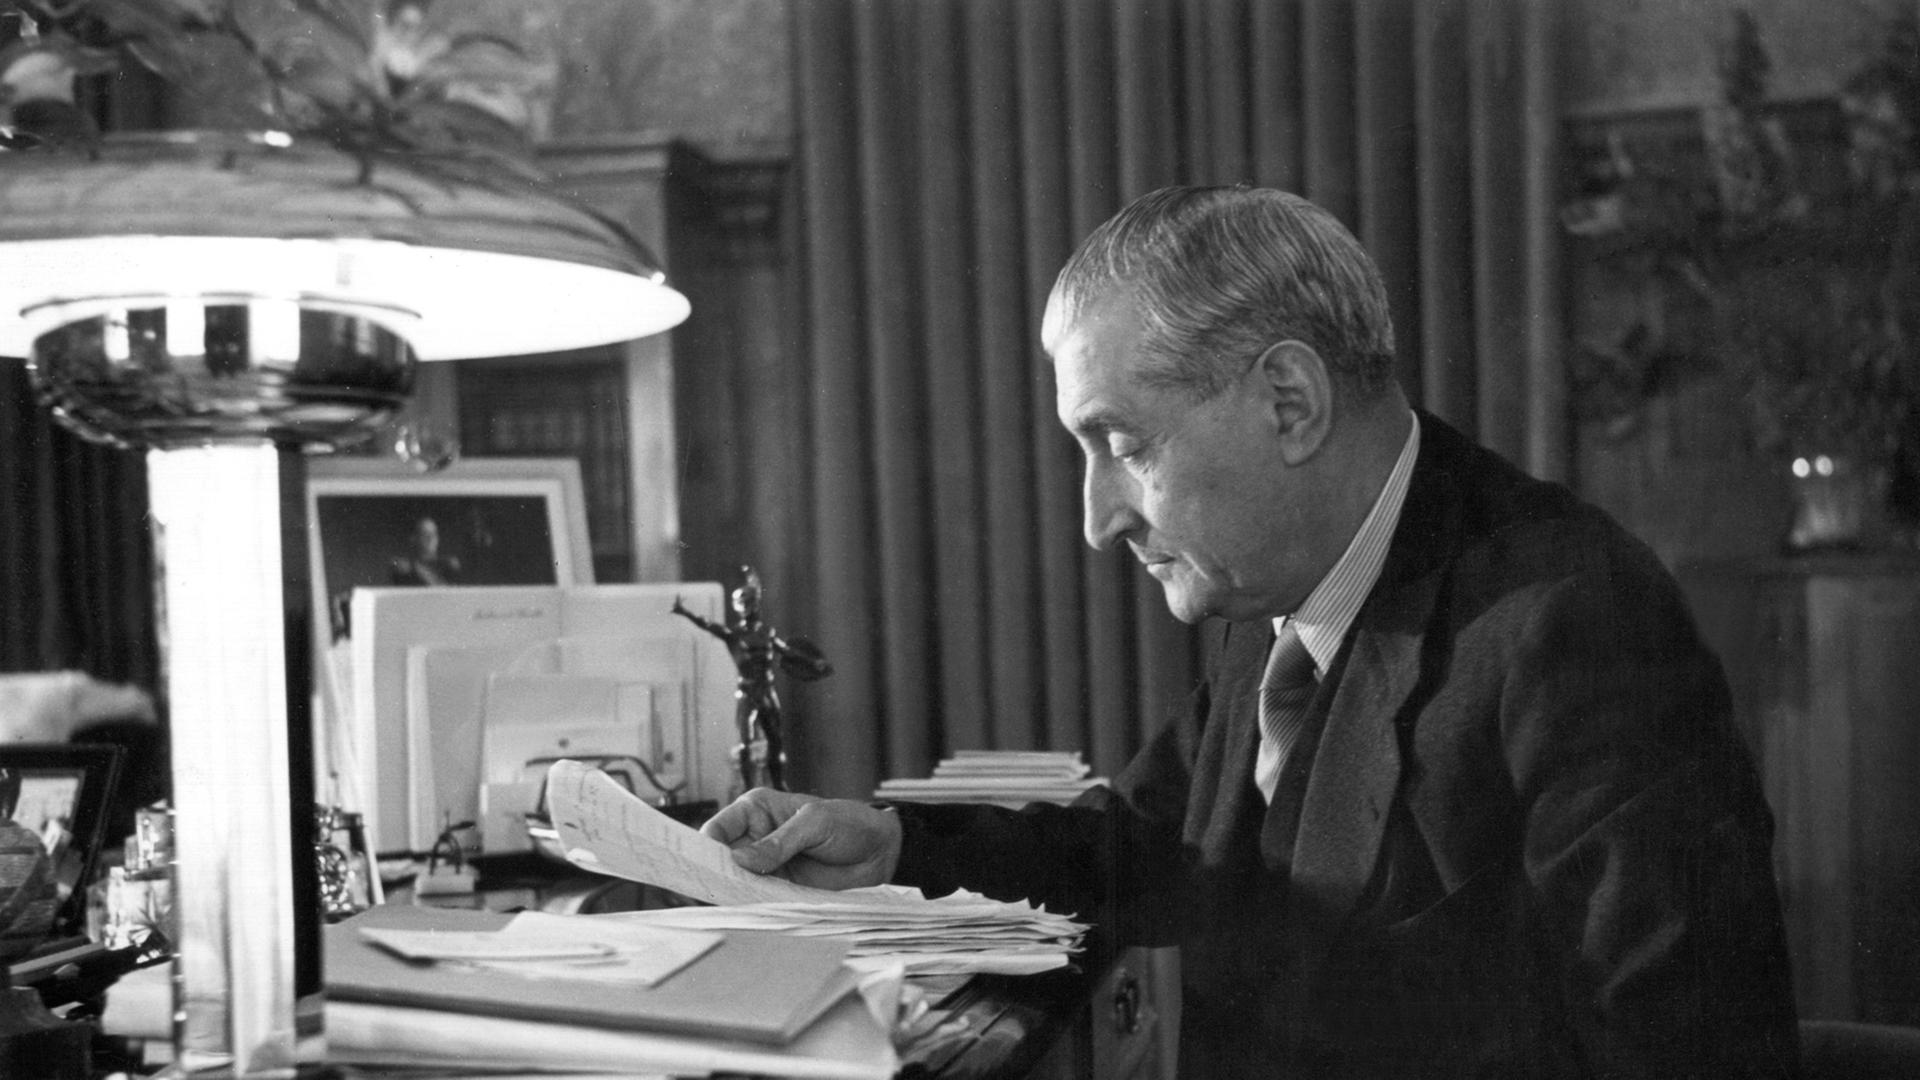 Der portugiesische Politiker António de Oliveira Salazar an seinem Schreibtisch. Von 1932 bis 1968 bekleidete er das Amt des Ministerpräsidenten und baute ein diktatorisches Regierungssystem auf.